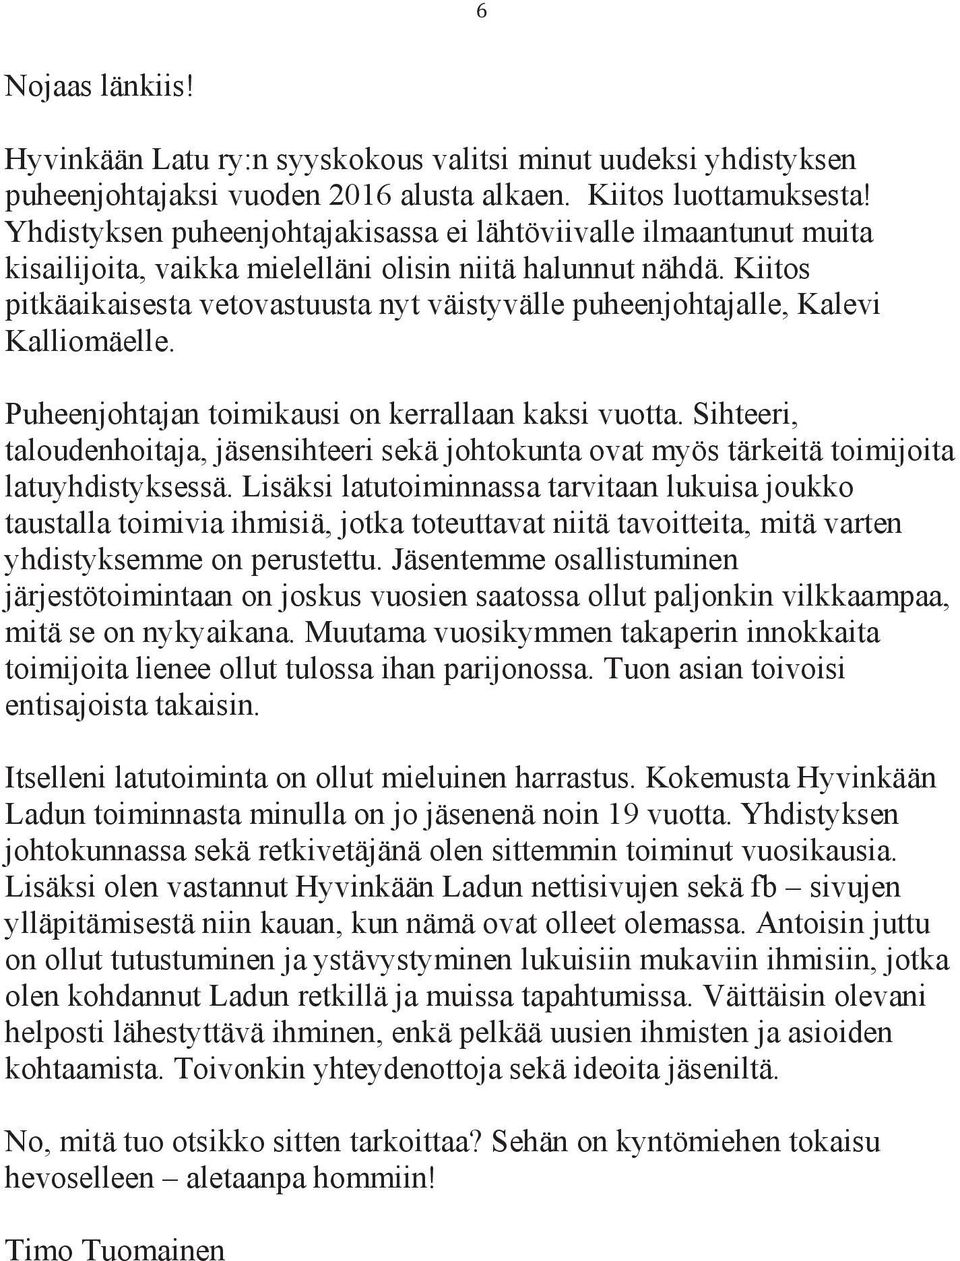 Kiitos pitkäaikaisesta vetovastuusta nyt väistyvälle puheenjohtajalle, Kalevi Kalliomäelle. Puheenjohtajan toimikausi on kerrallaan kaksi vuotta.